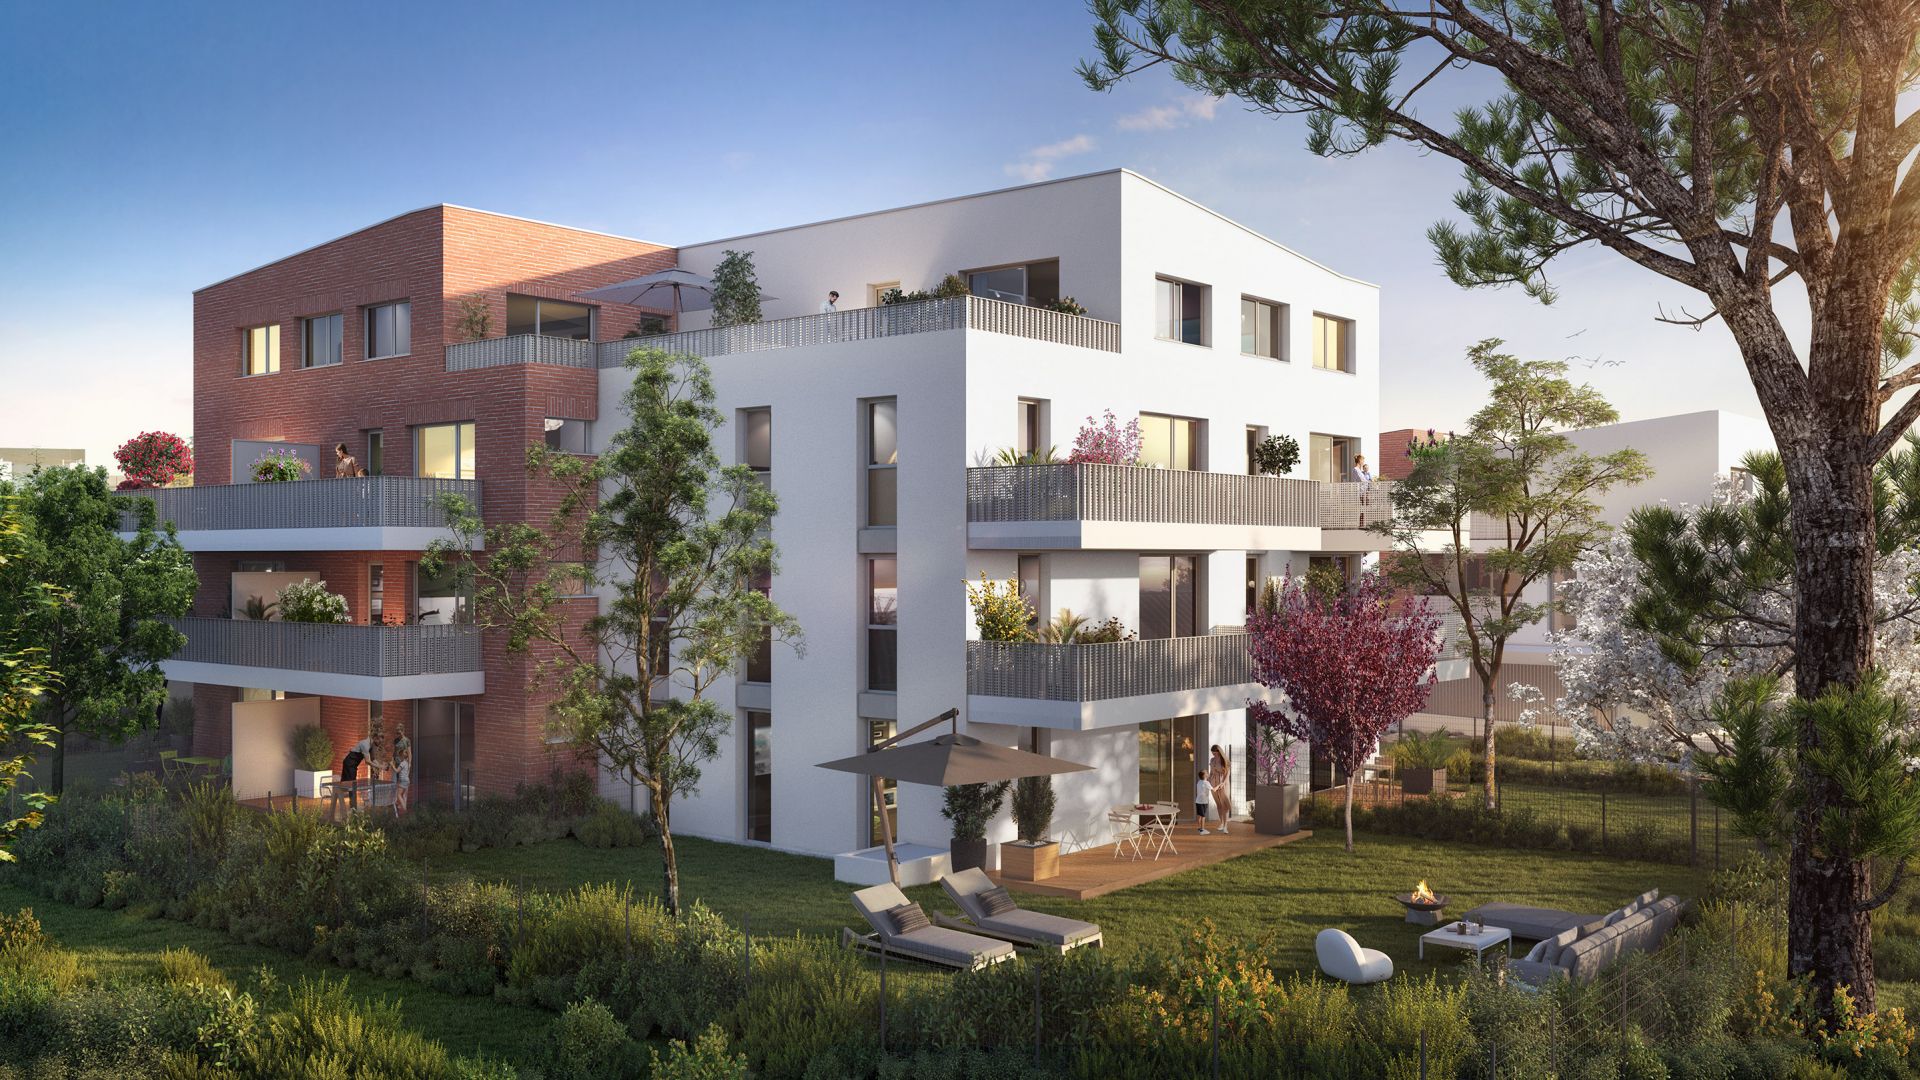 Greencity immobilier - achat appartements neufs du T2 au T4 - Résidence Le Sant-Marti - 31300 Toulouse Saint-Martin du Touch  